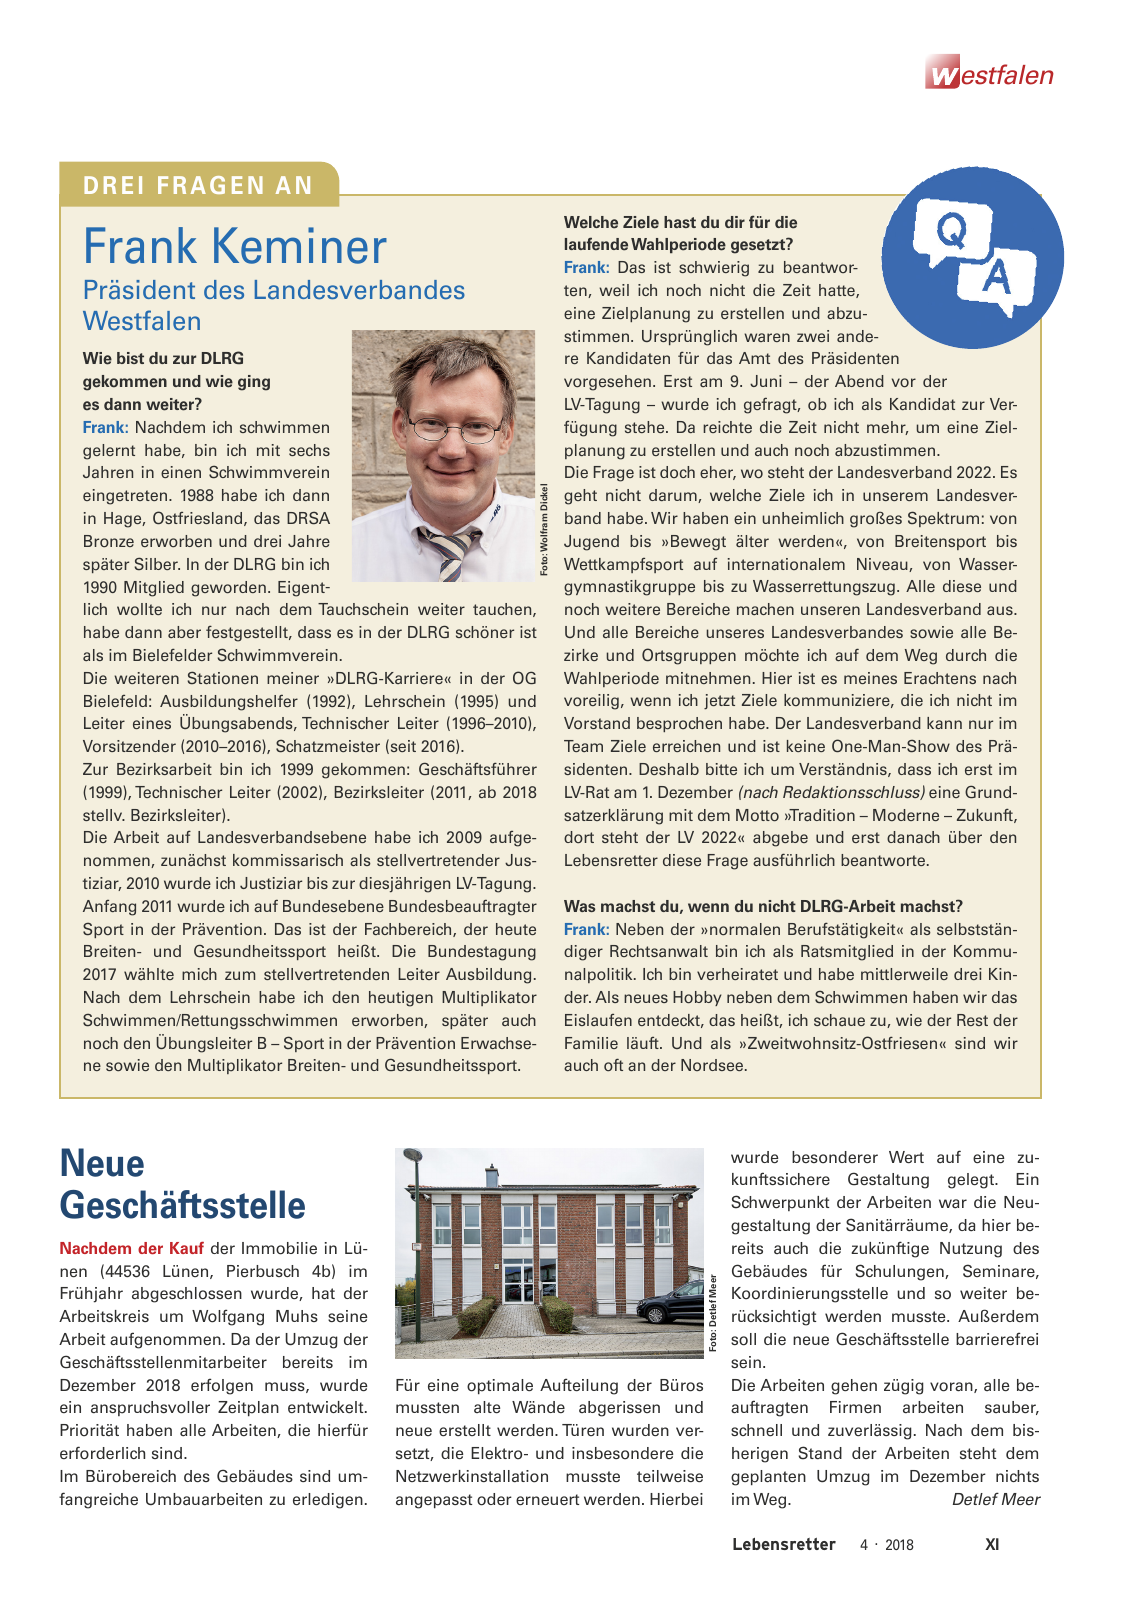 Vorschau Lebensretter 4/2018 - Regionalausgabe Westfalen Seite 13